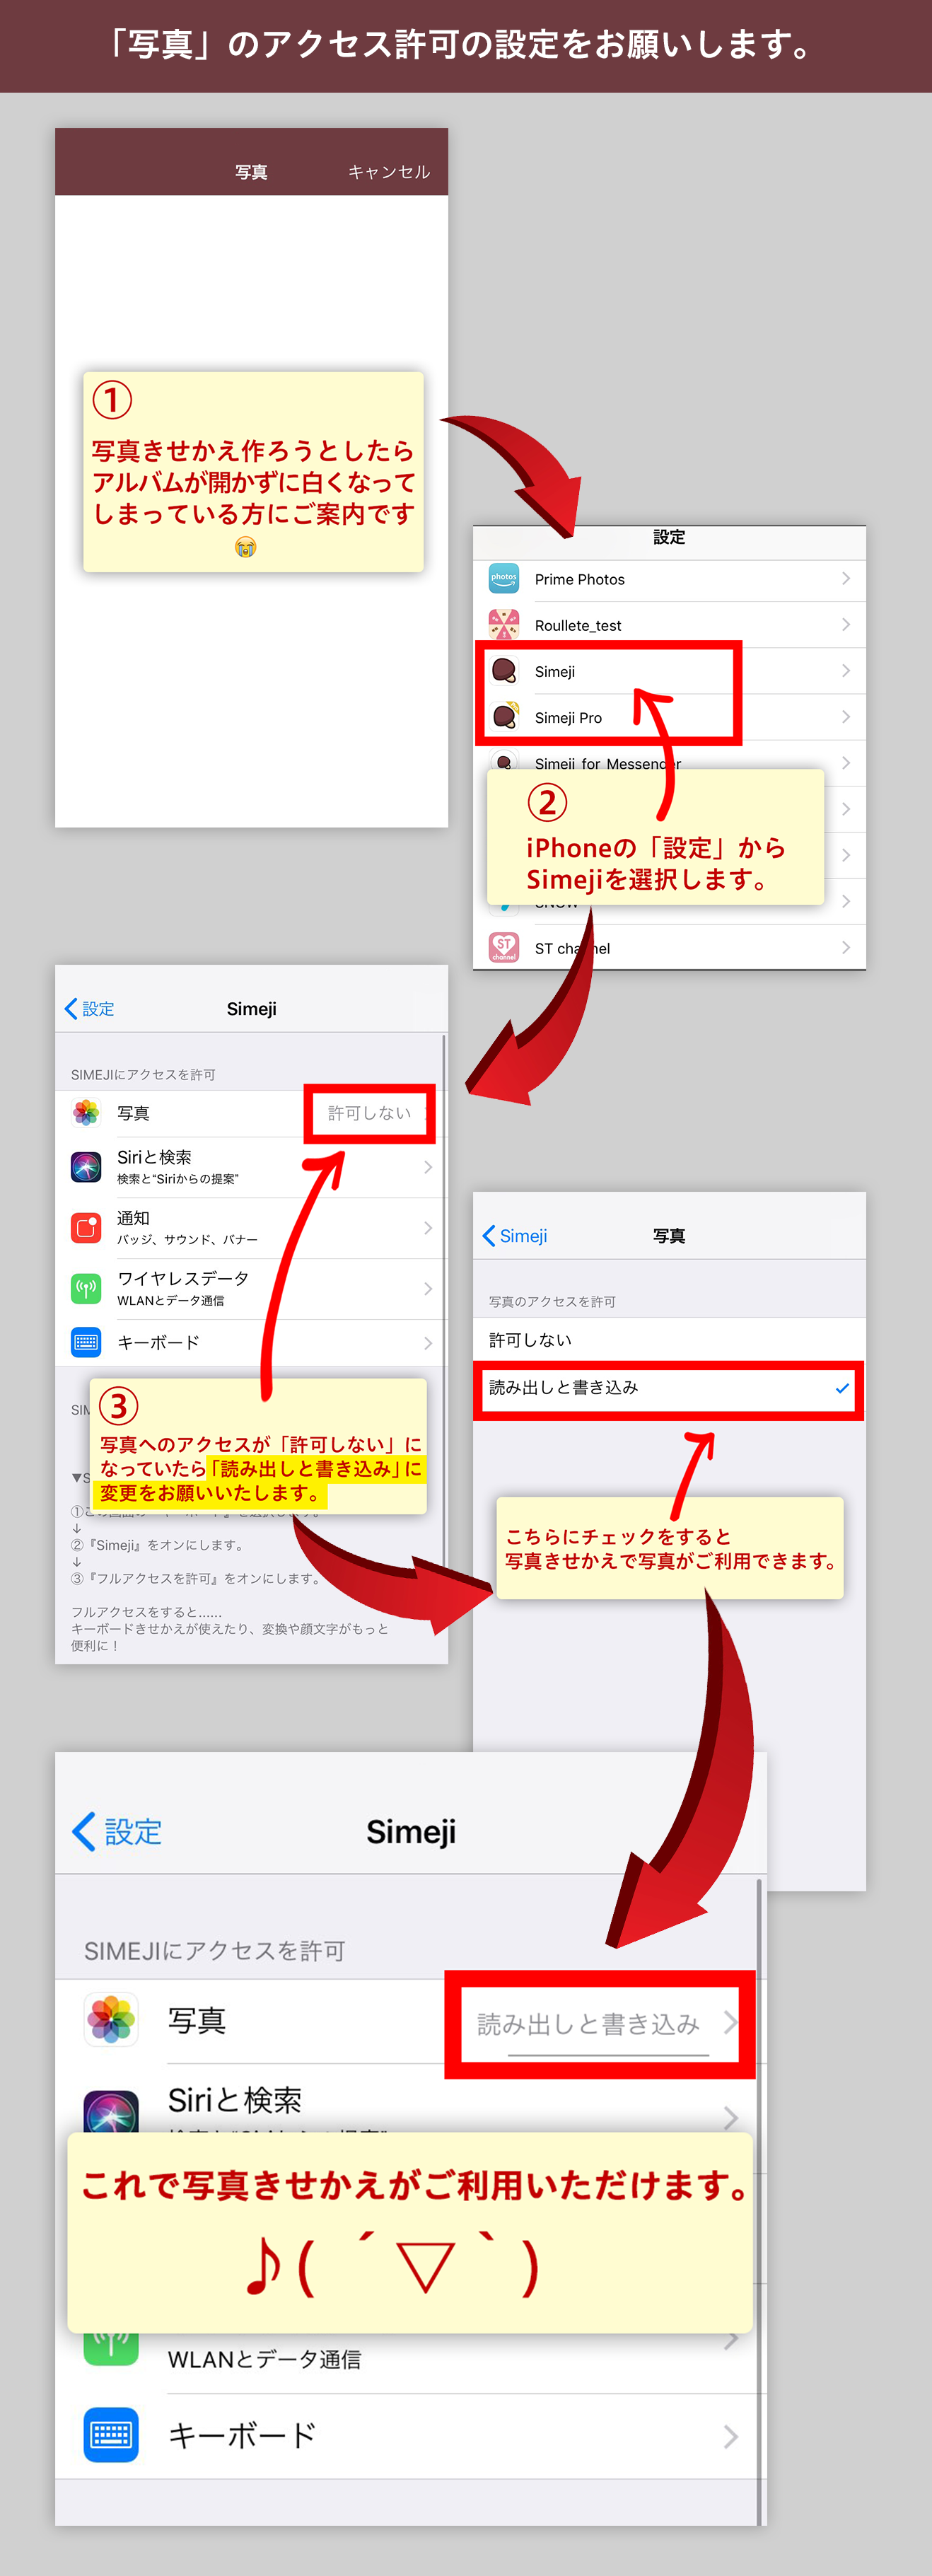 風邪をひく ストレンジャー キャベツ Iphone キーボード 画像 作り方 Tenpo Syukyaku Jp